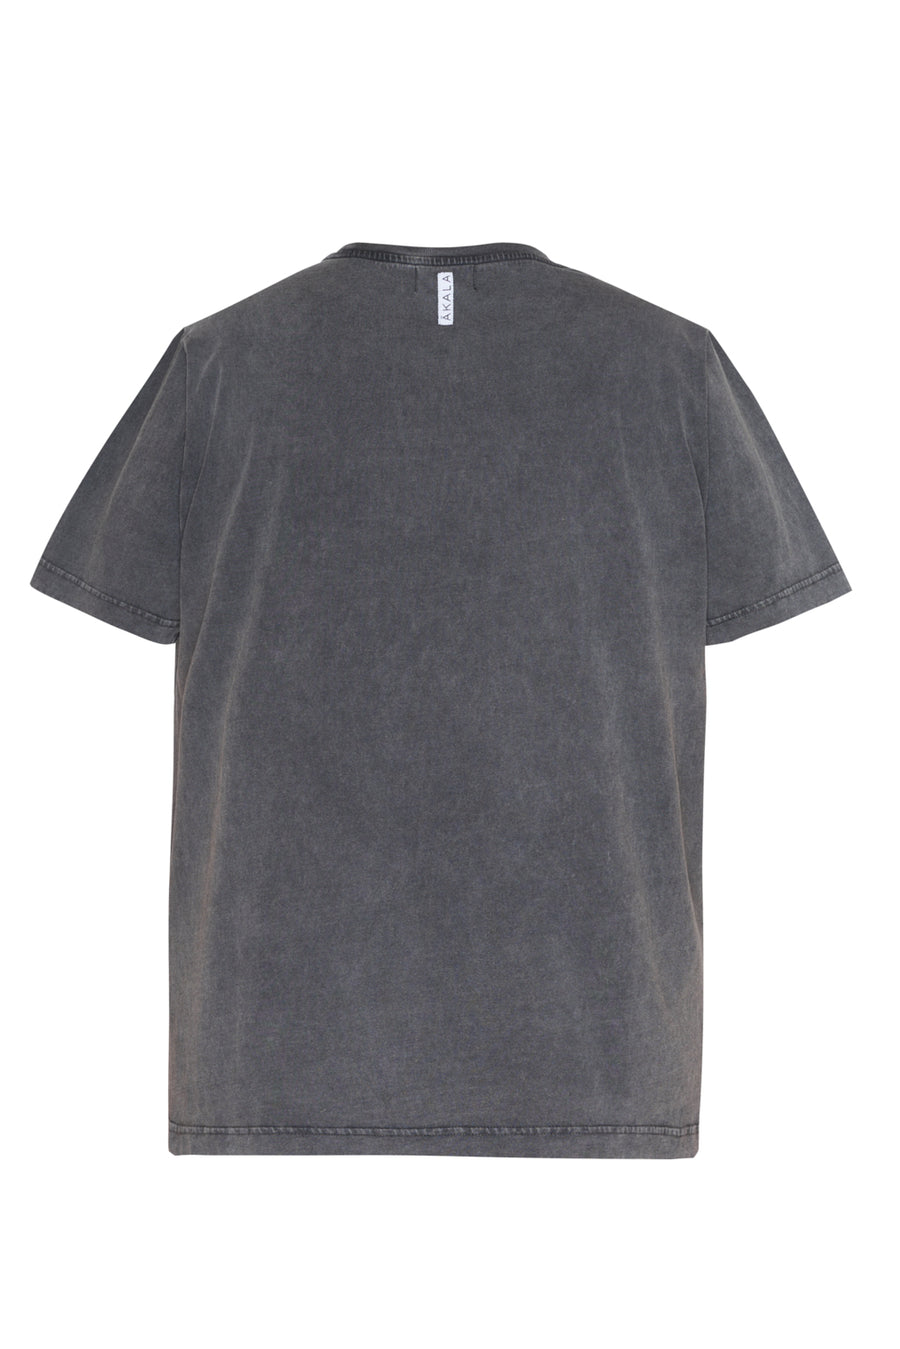 Oversized washed grey T-shirt